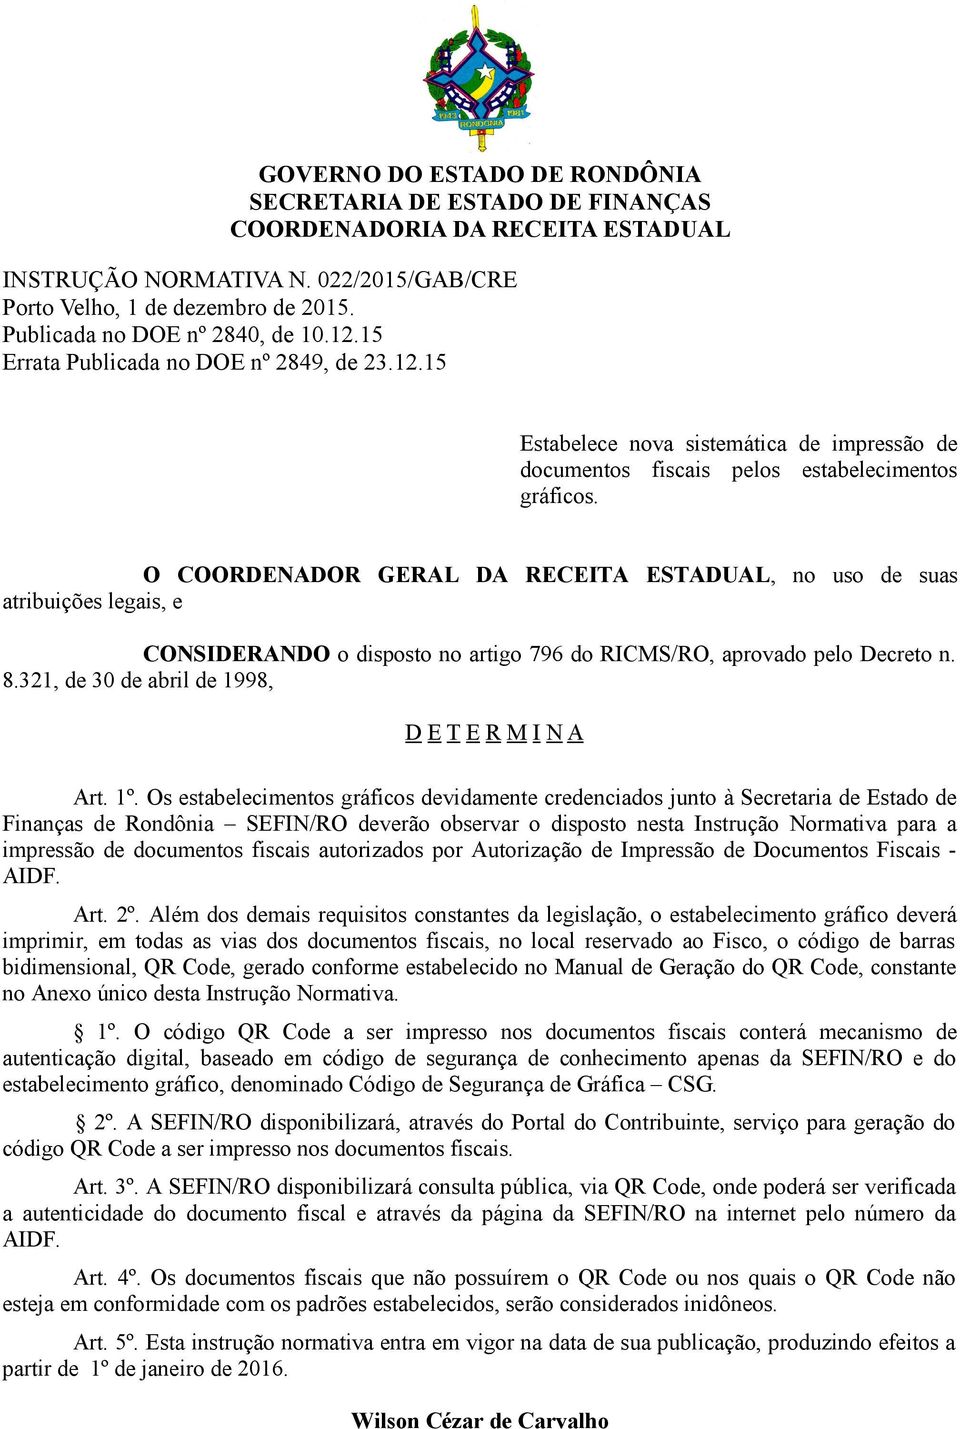 O COORDENADOR GERAL DA RECEITA ESTADUAL, no uso de suas atribuições legais, e CONSIDERANDO o disposto no artigo 796 do RICMS/RO, aprovado pelo Decreto n. 8.